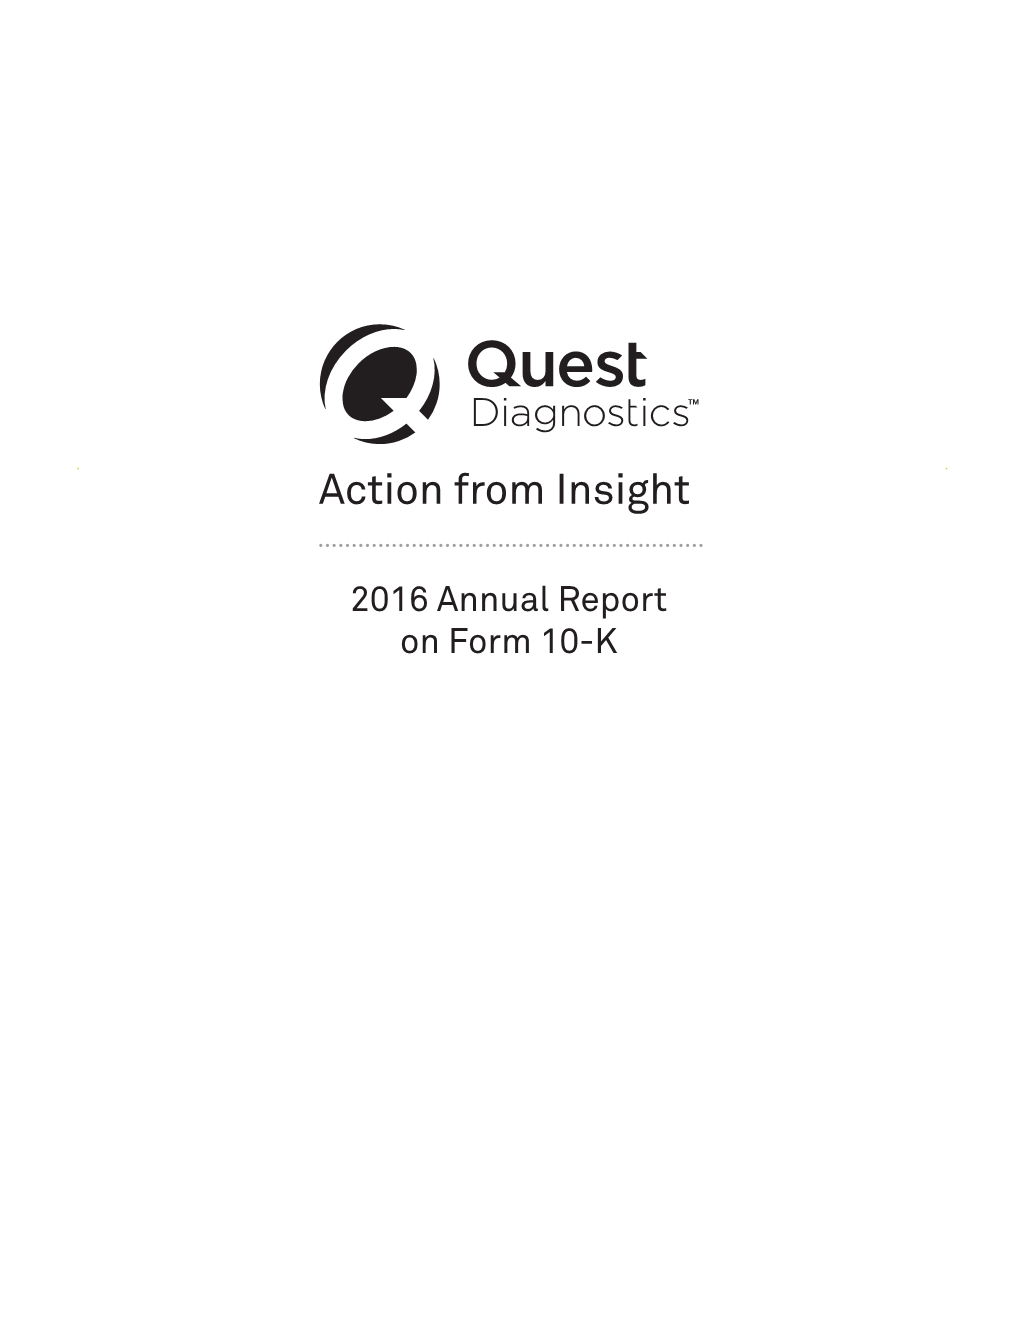 Quest Diagnostics Inc. 2016 Annual Report